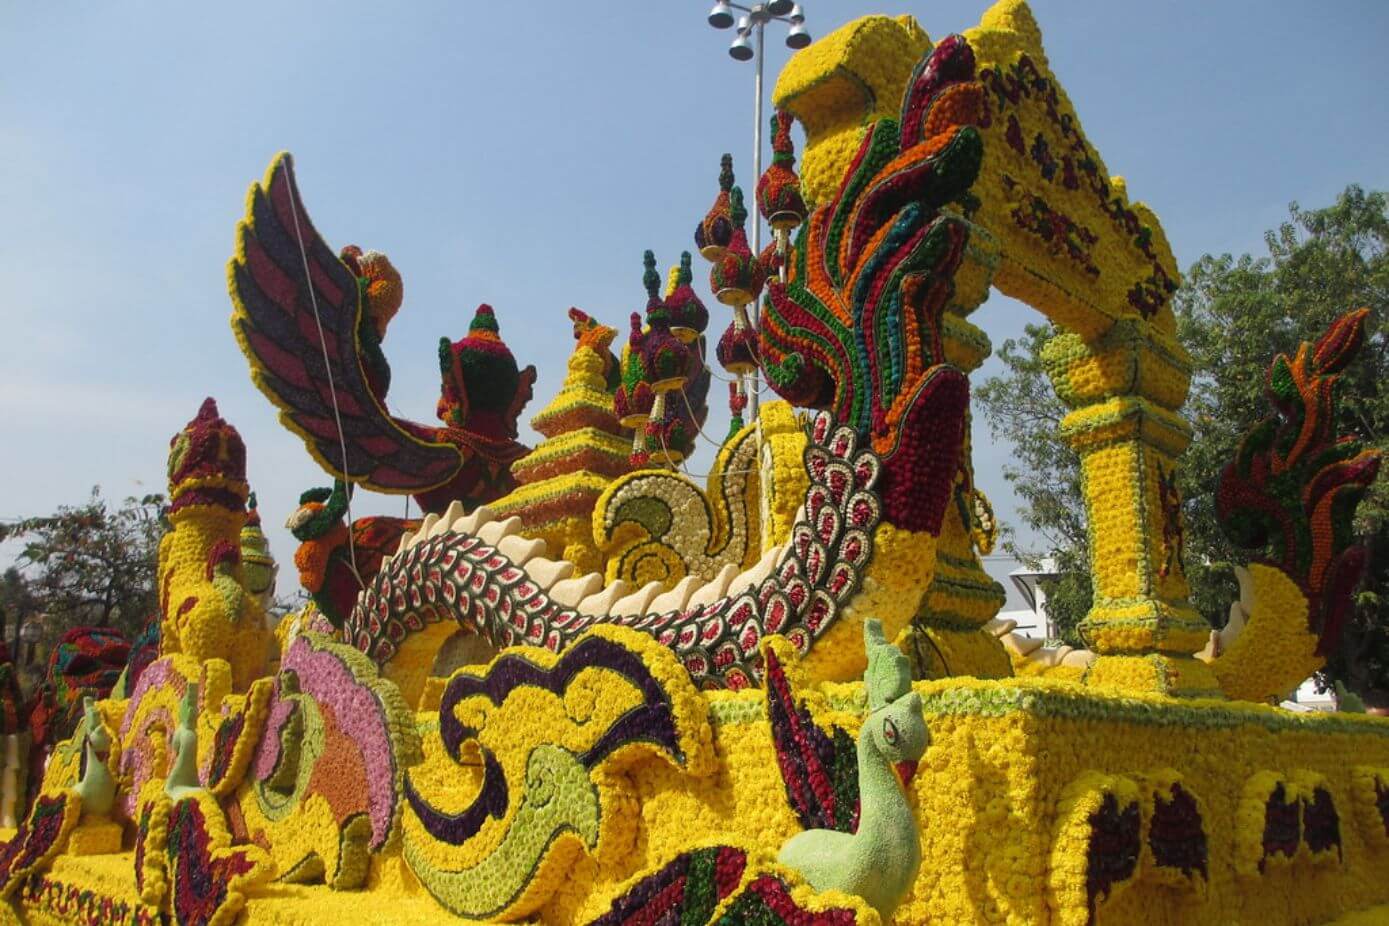 Chiang Mai Flower festival